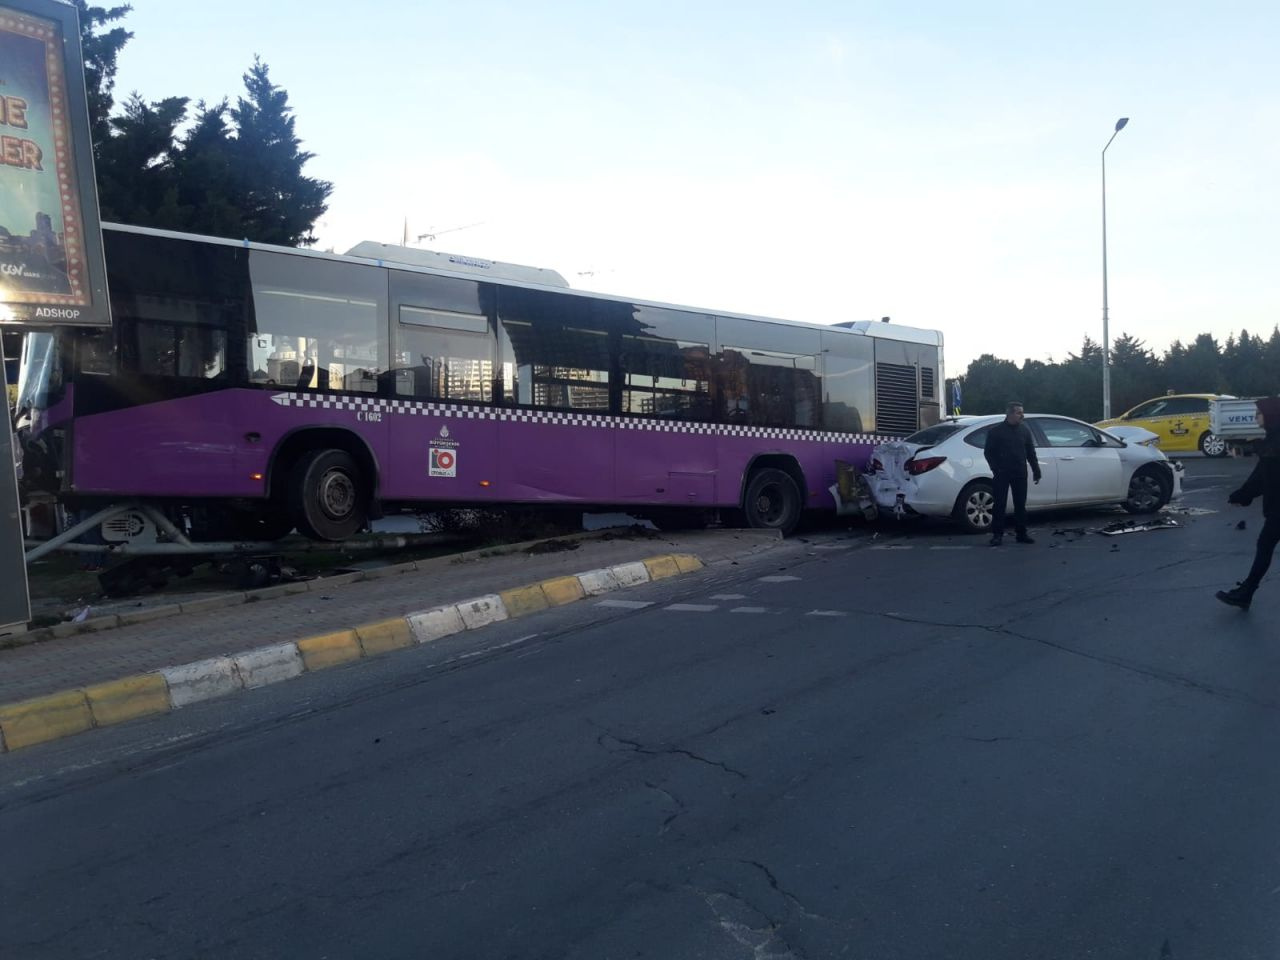 Olayın adresi Ataşehir! Araca çarpan otobüs ancak direği devirerek durabildi